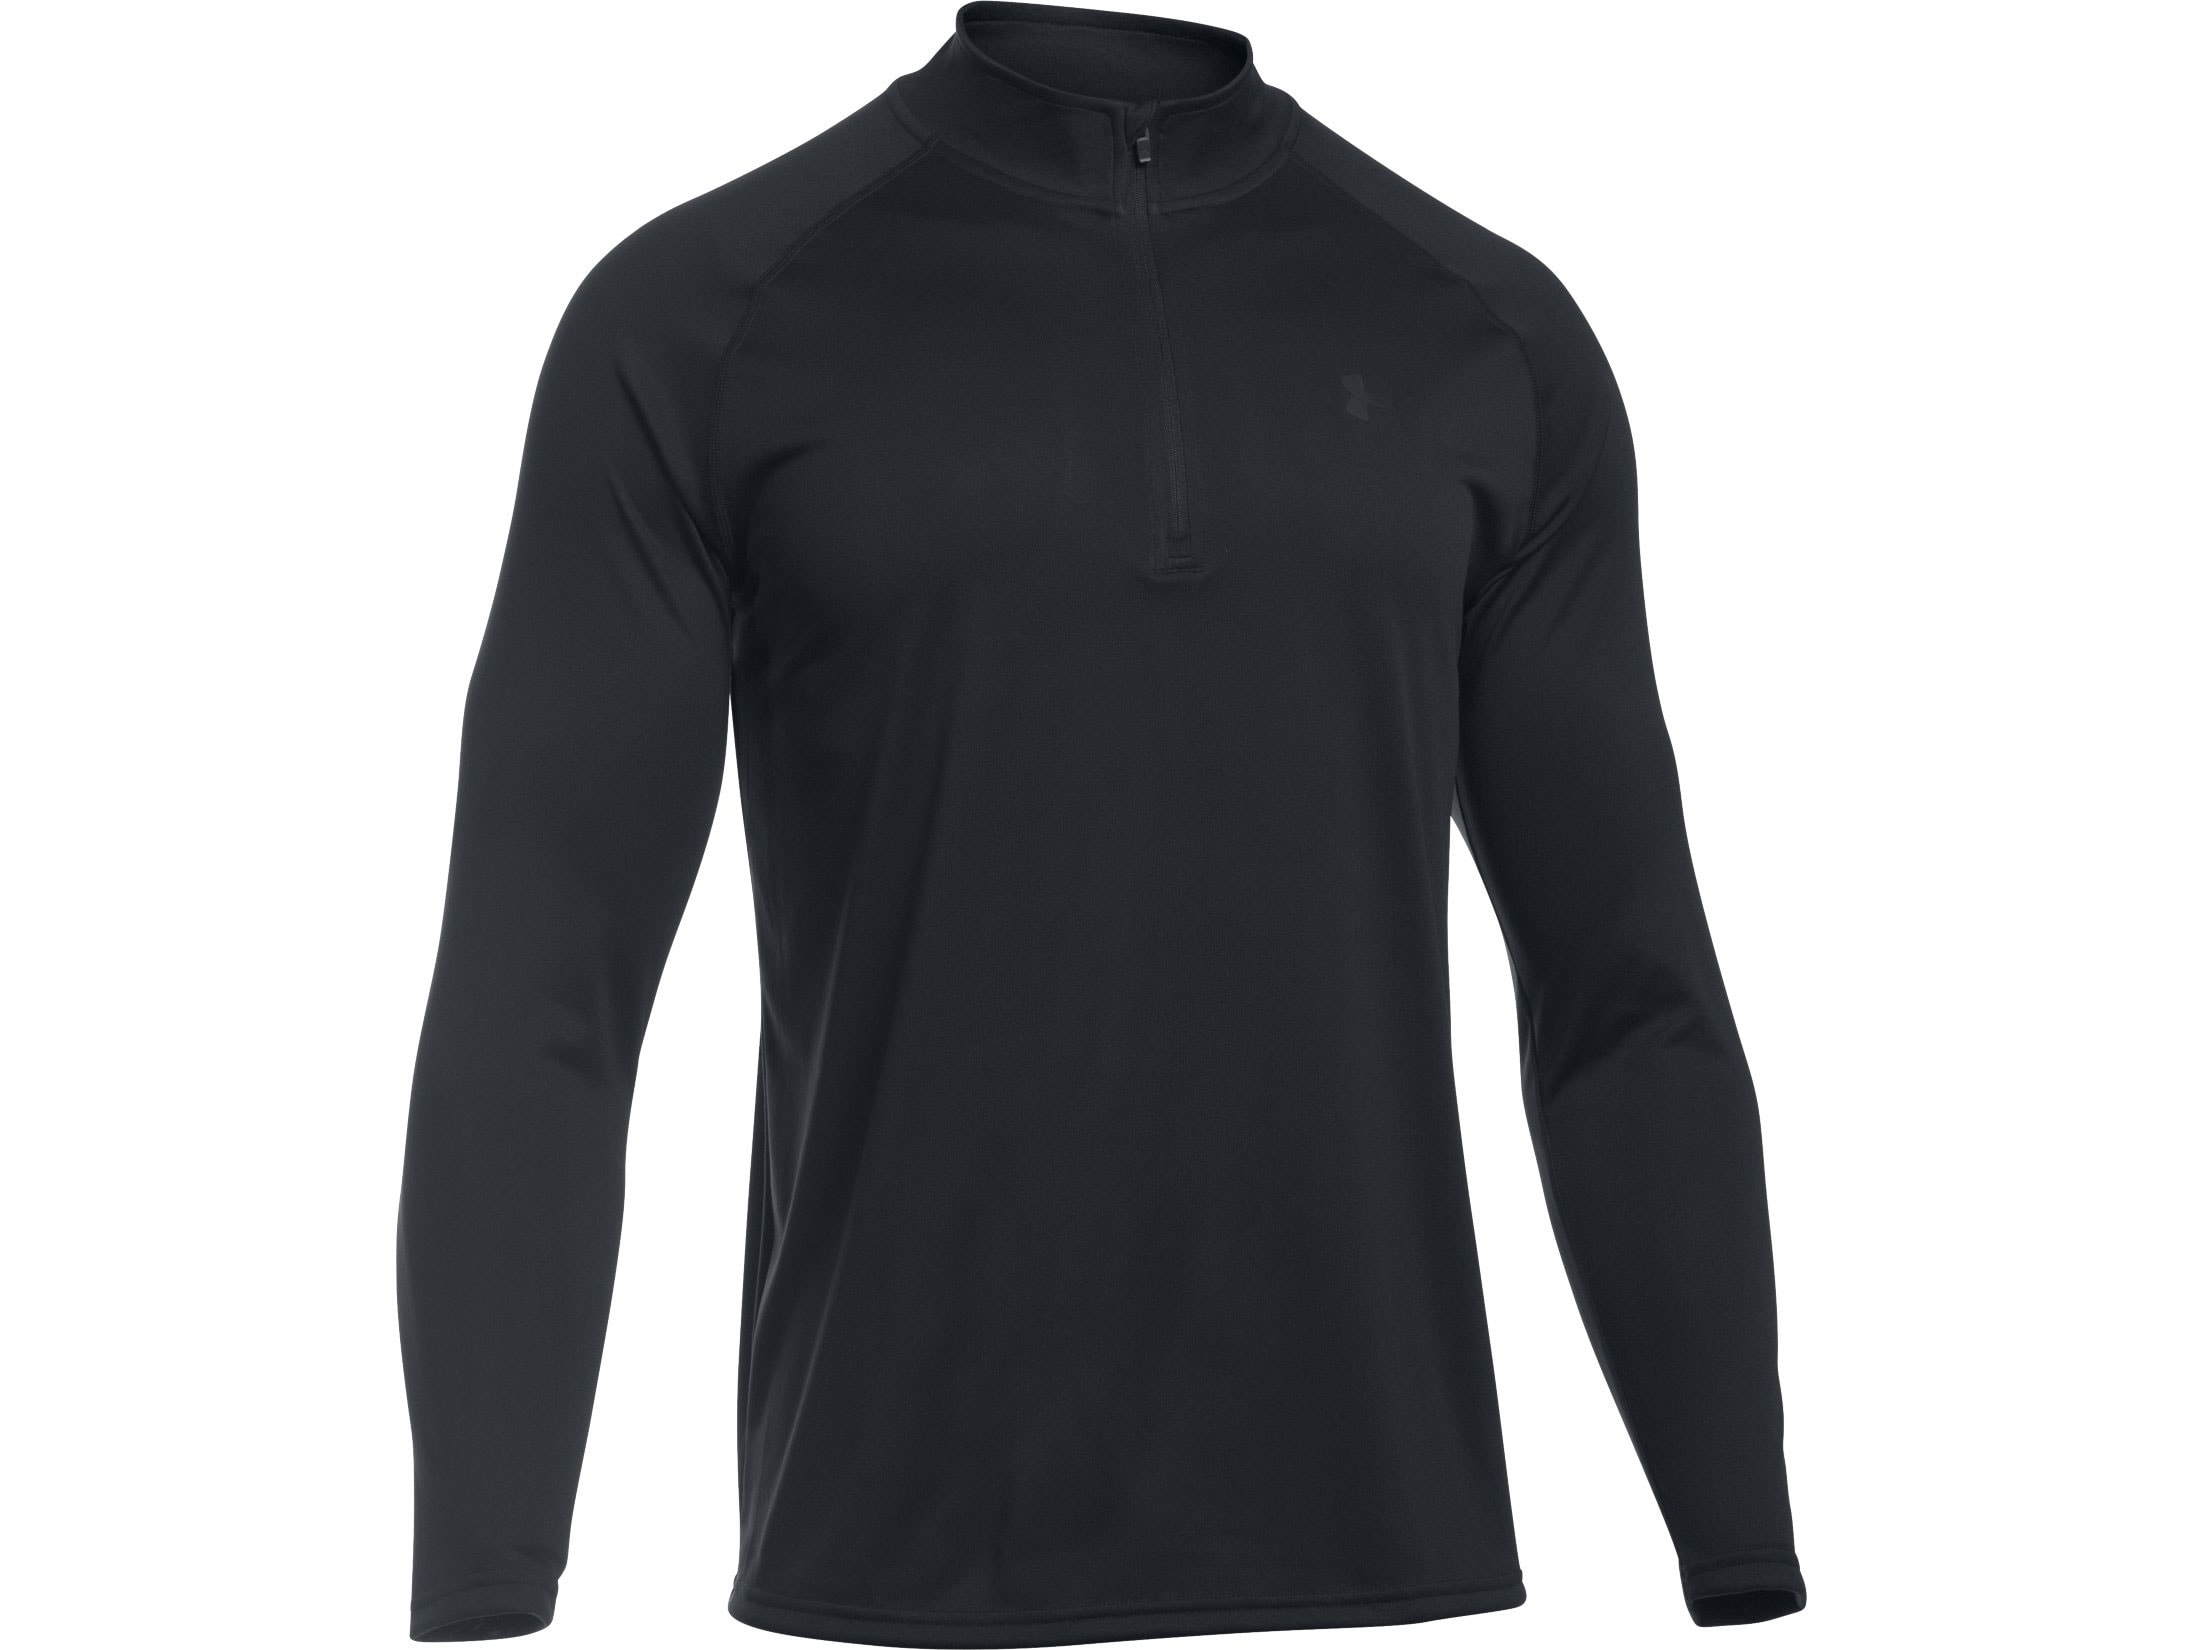 Under Armour Men's UA Tac Tech 1/4 Zip Shirt Long Sleeve Polyester